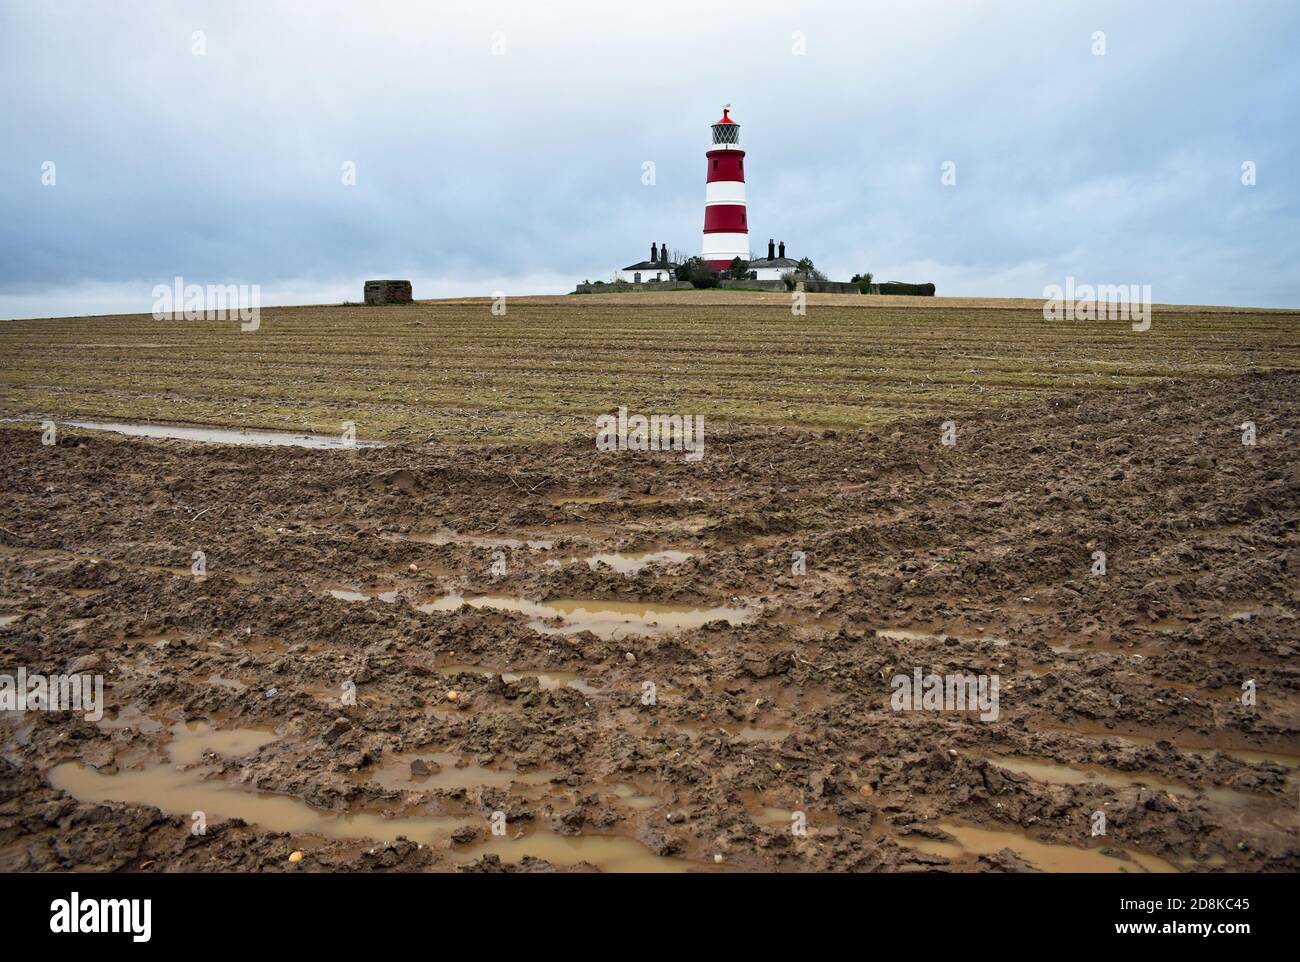 Der rot-weiß gestreifte Happisburgh Lighthouse entlang der Norfolk Küste, England.der Leuchtturm steht hoch in einem schlammigen Feld mit einem Pillbox. Stockfoto